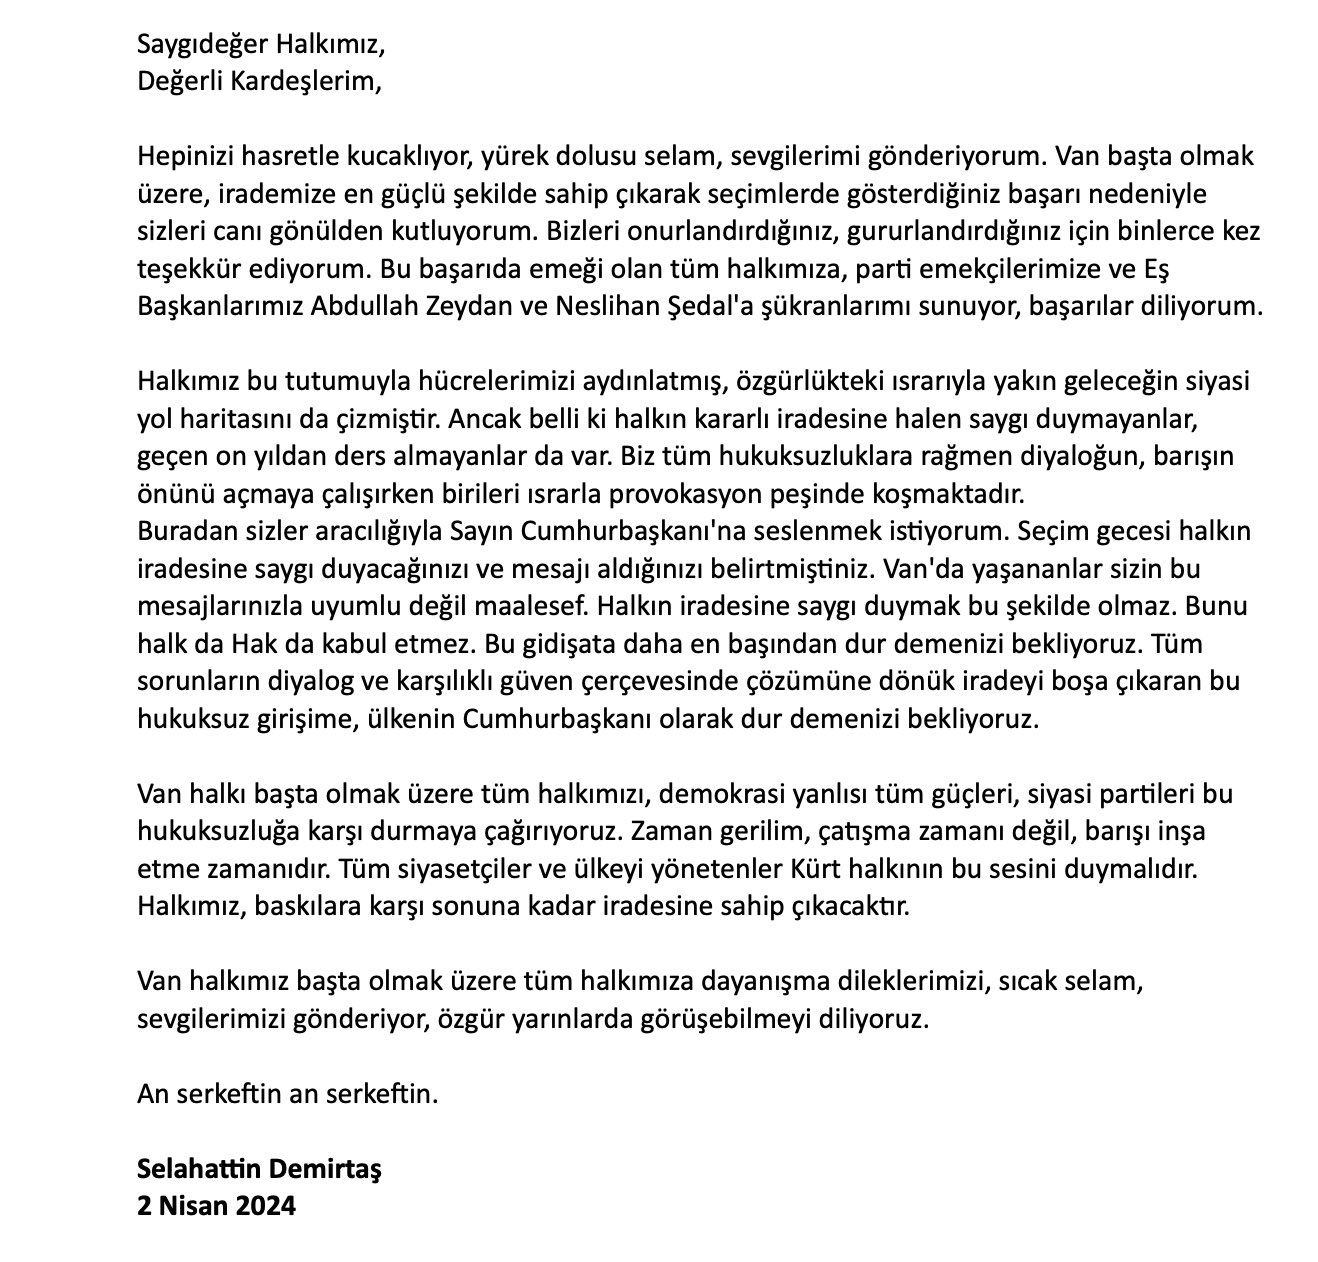 Demirtaş’tan Erdoğan’a Van çağrısı: Dur demenizi bekliyoruz!